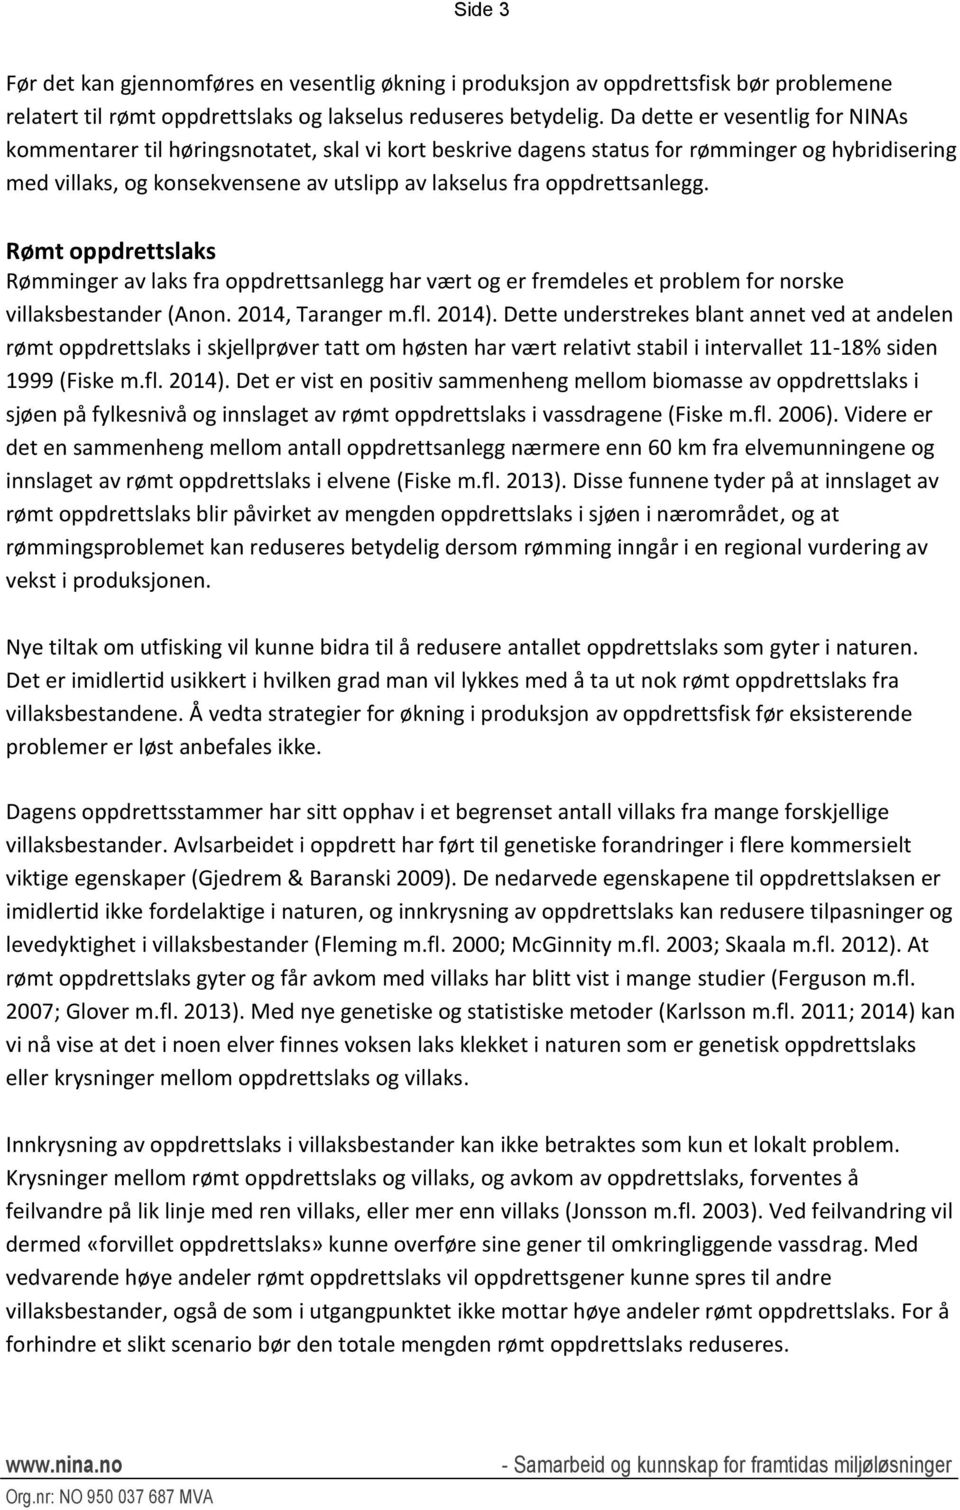 oppdrettsanlegg. Rømt oppdrettslaks Rømminger av laks fra oppdrettsanlegg har vært og er fremdeles et problem for norske villaksbestander (Anon. 2014, Taranger m.fl. 2014).